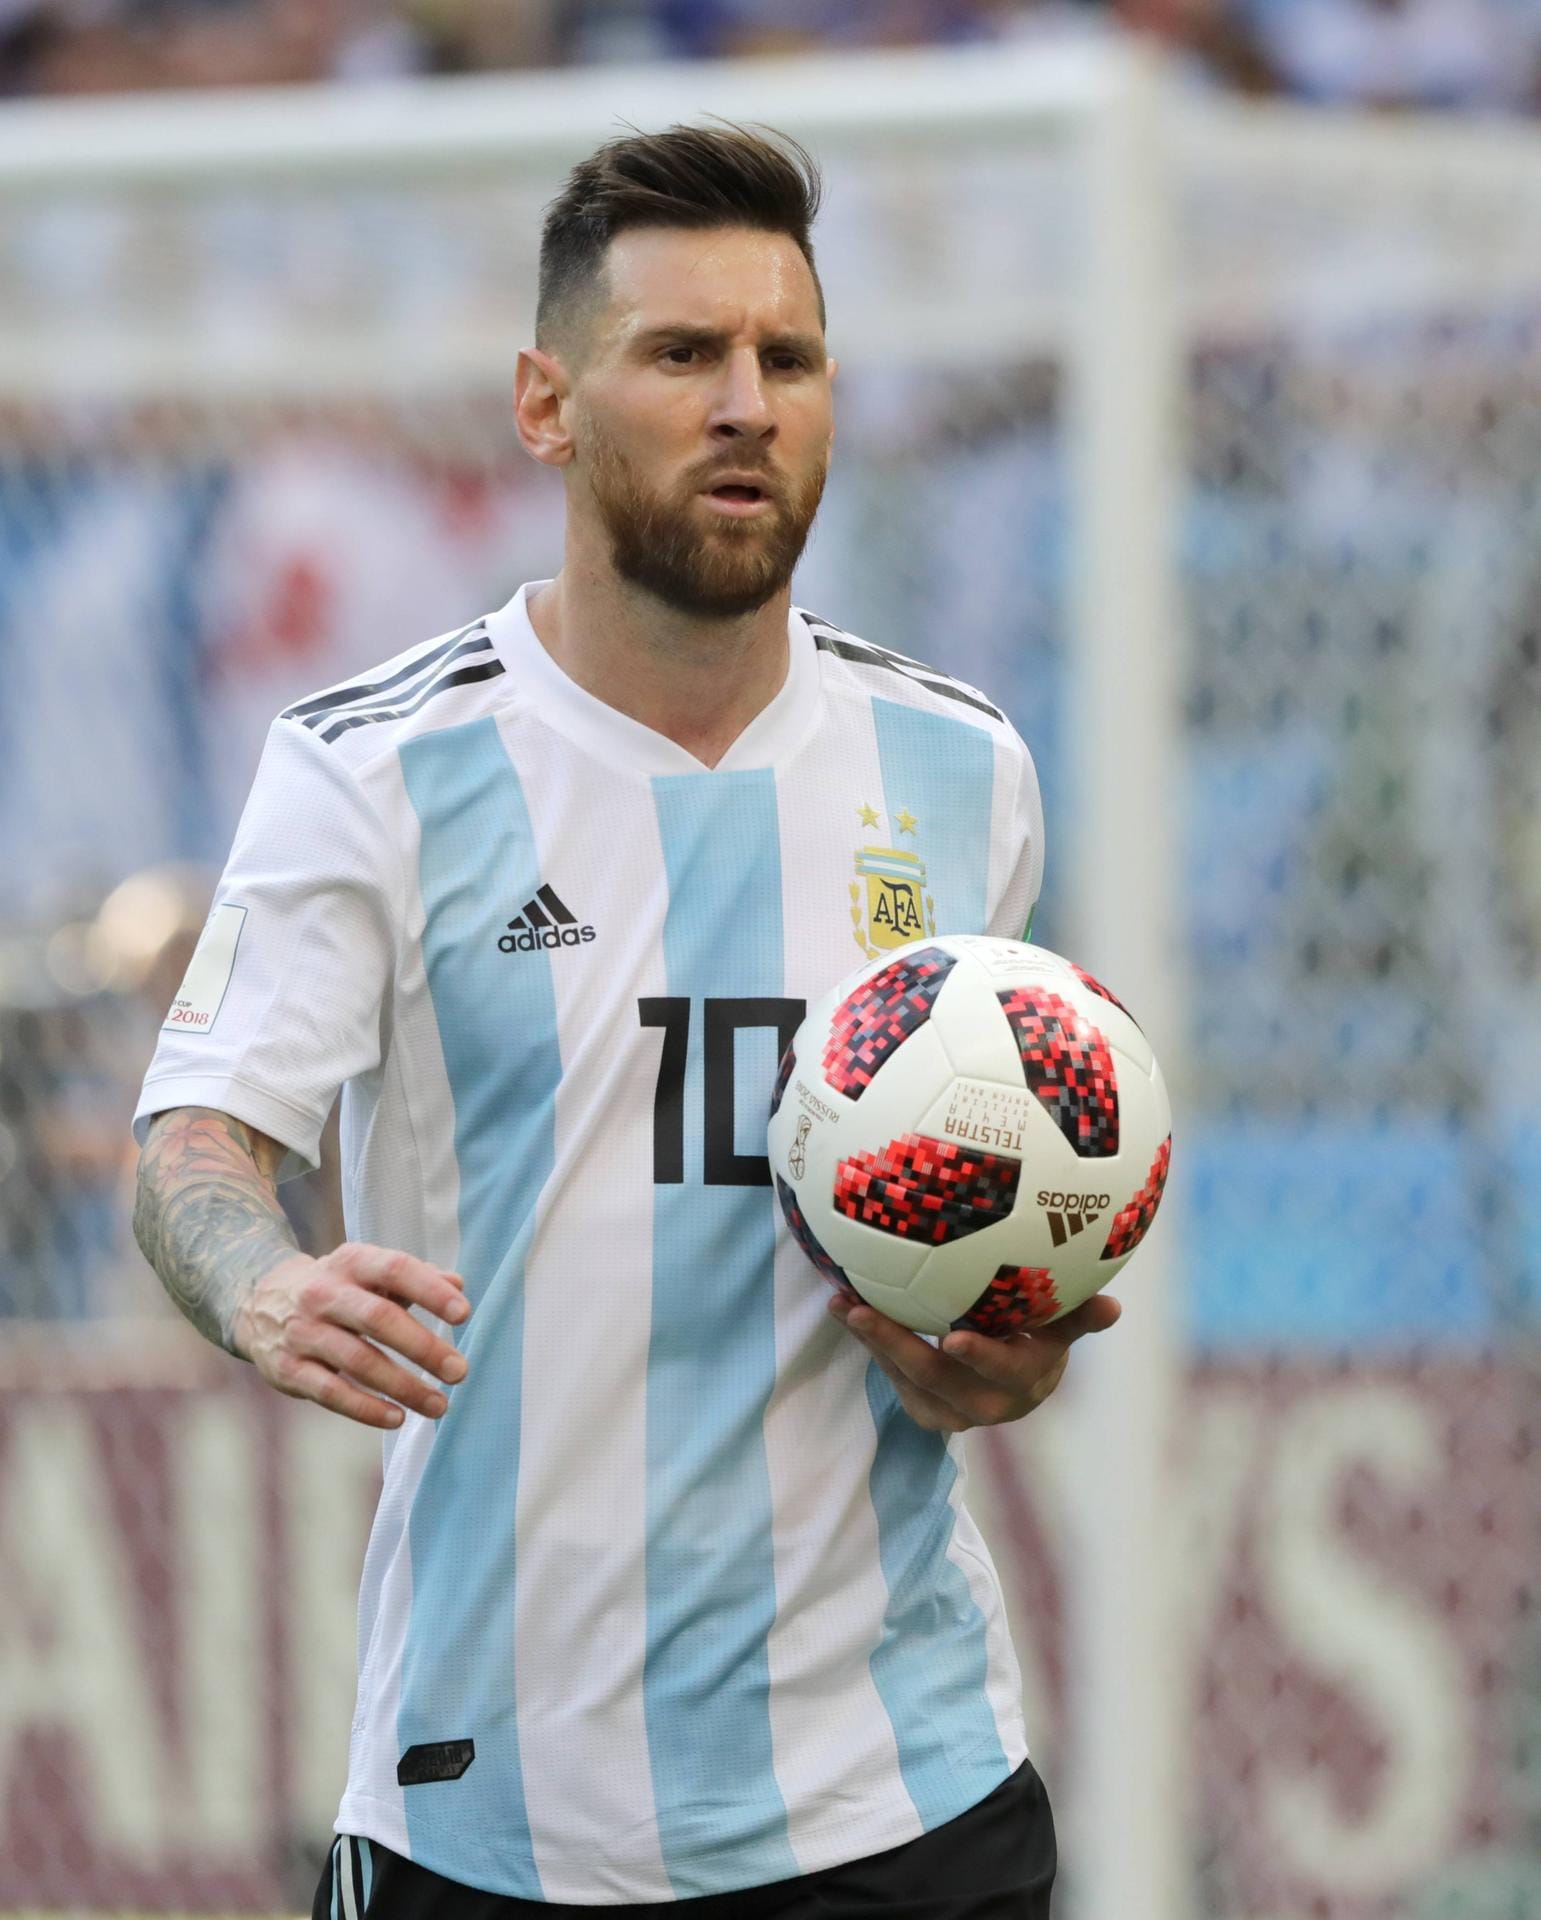 8. Platz: Lionel Messi vom FC Barcelona ist der bestbezahlte Fußballspieler der Welt. Mit einem Verdienst von 111 Millionen Dollar (rund 95 Millionen Euro) ist der Argentinier der erfolgreichste Sportler im Fußball.